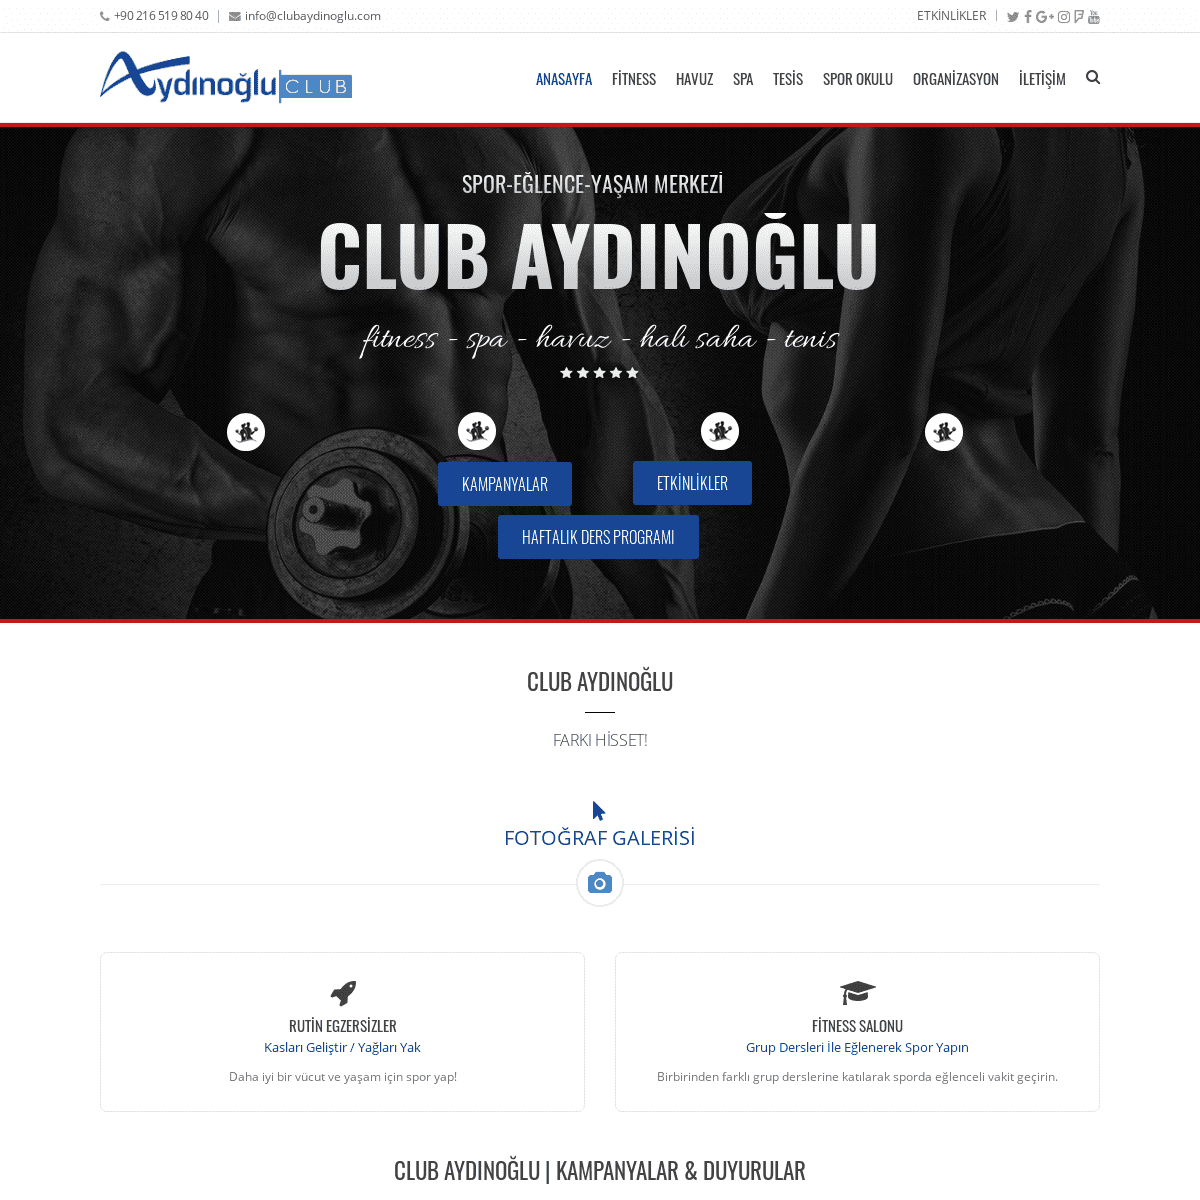 A complete backup of clubaydinoglu.com